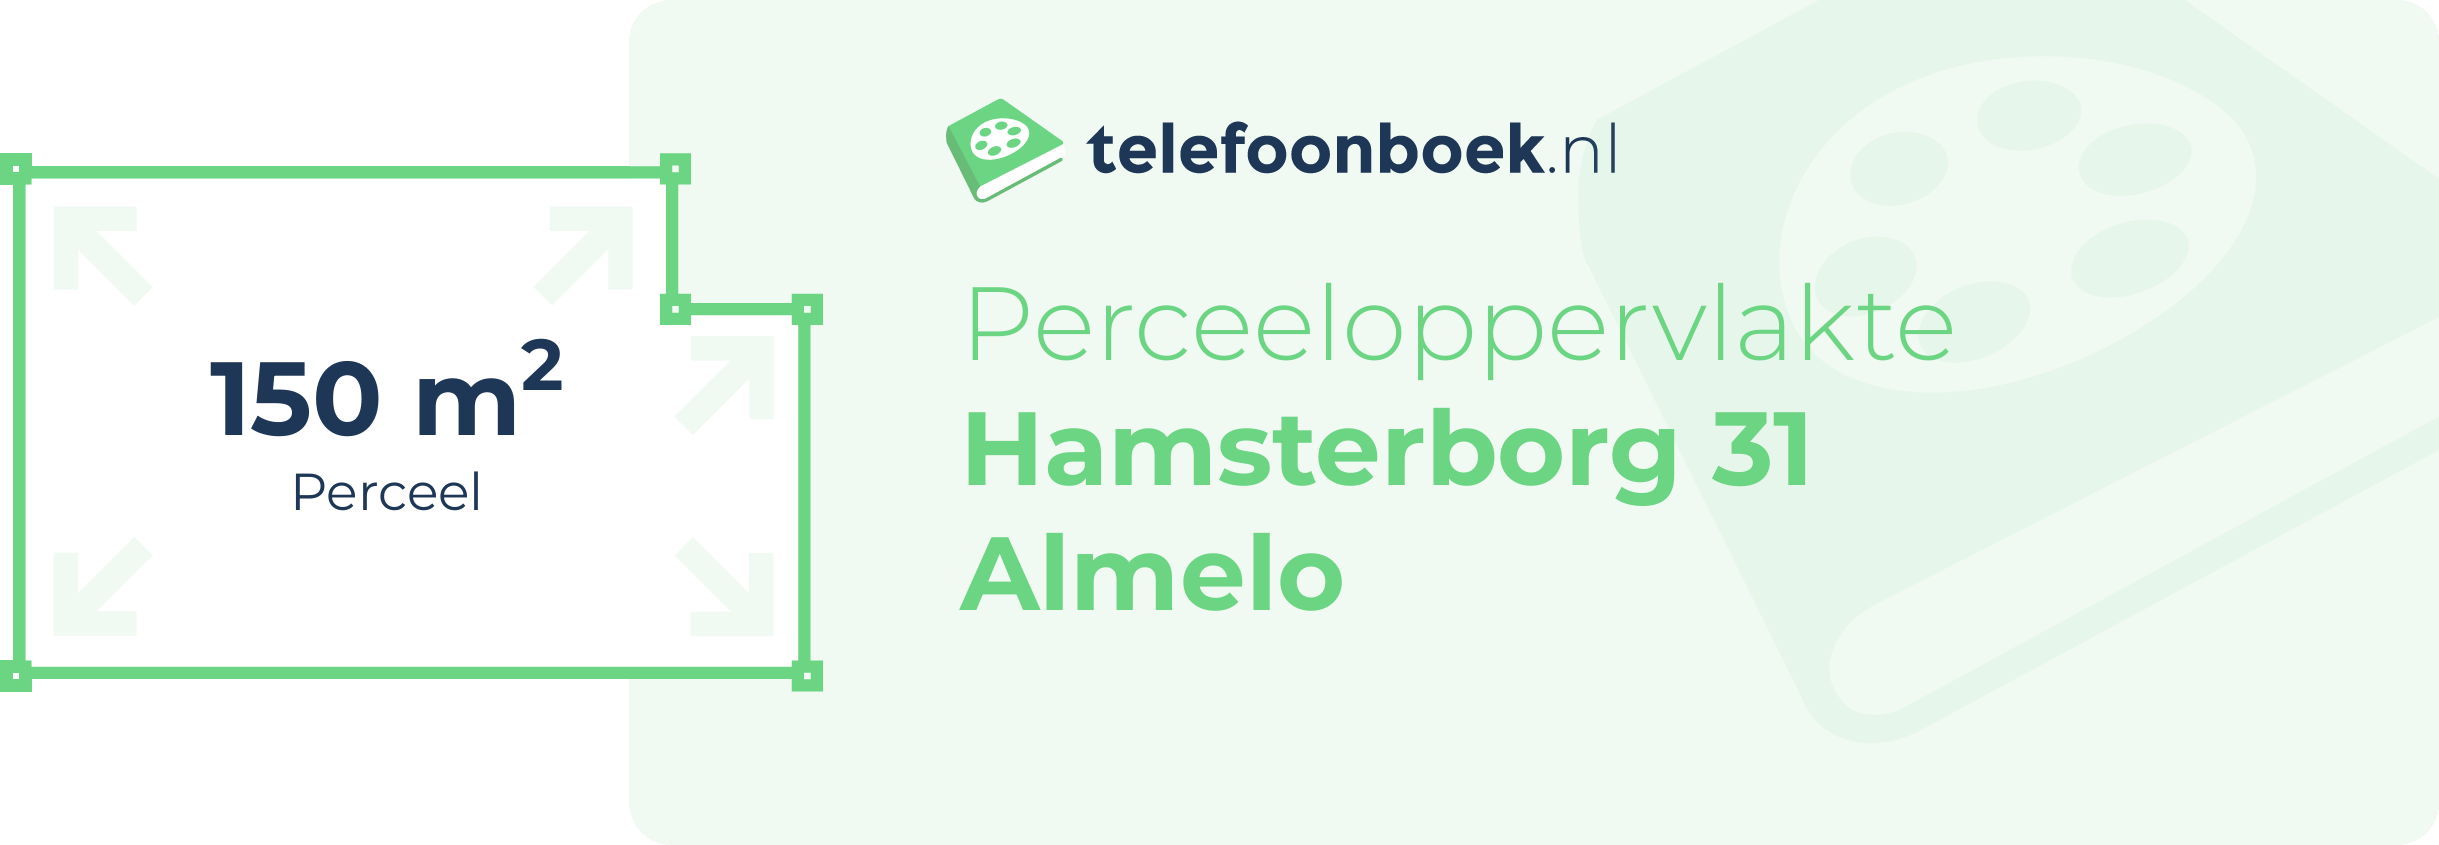 Perceeloppervlakte Hamsterborg 31 Almelo